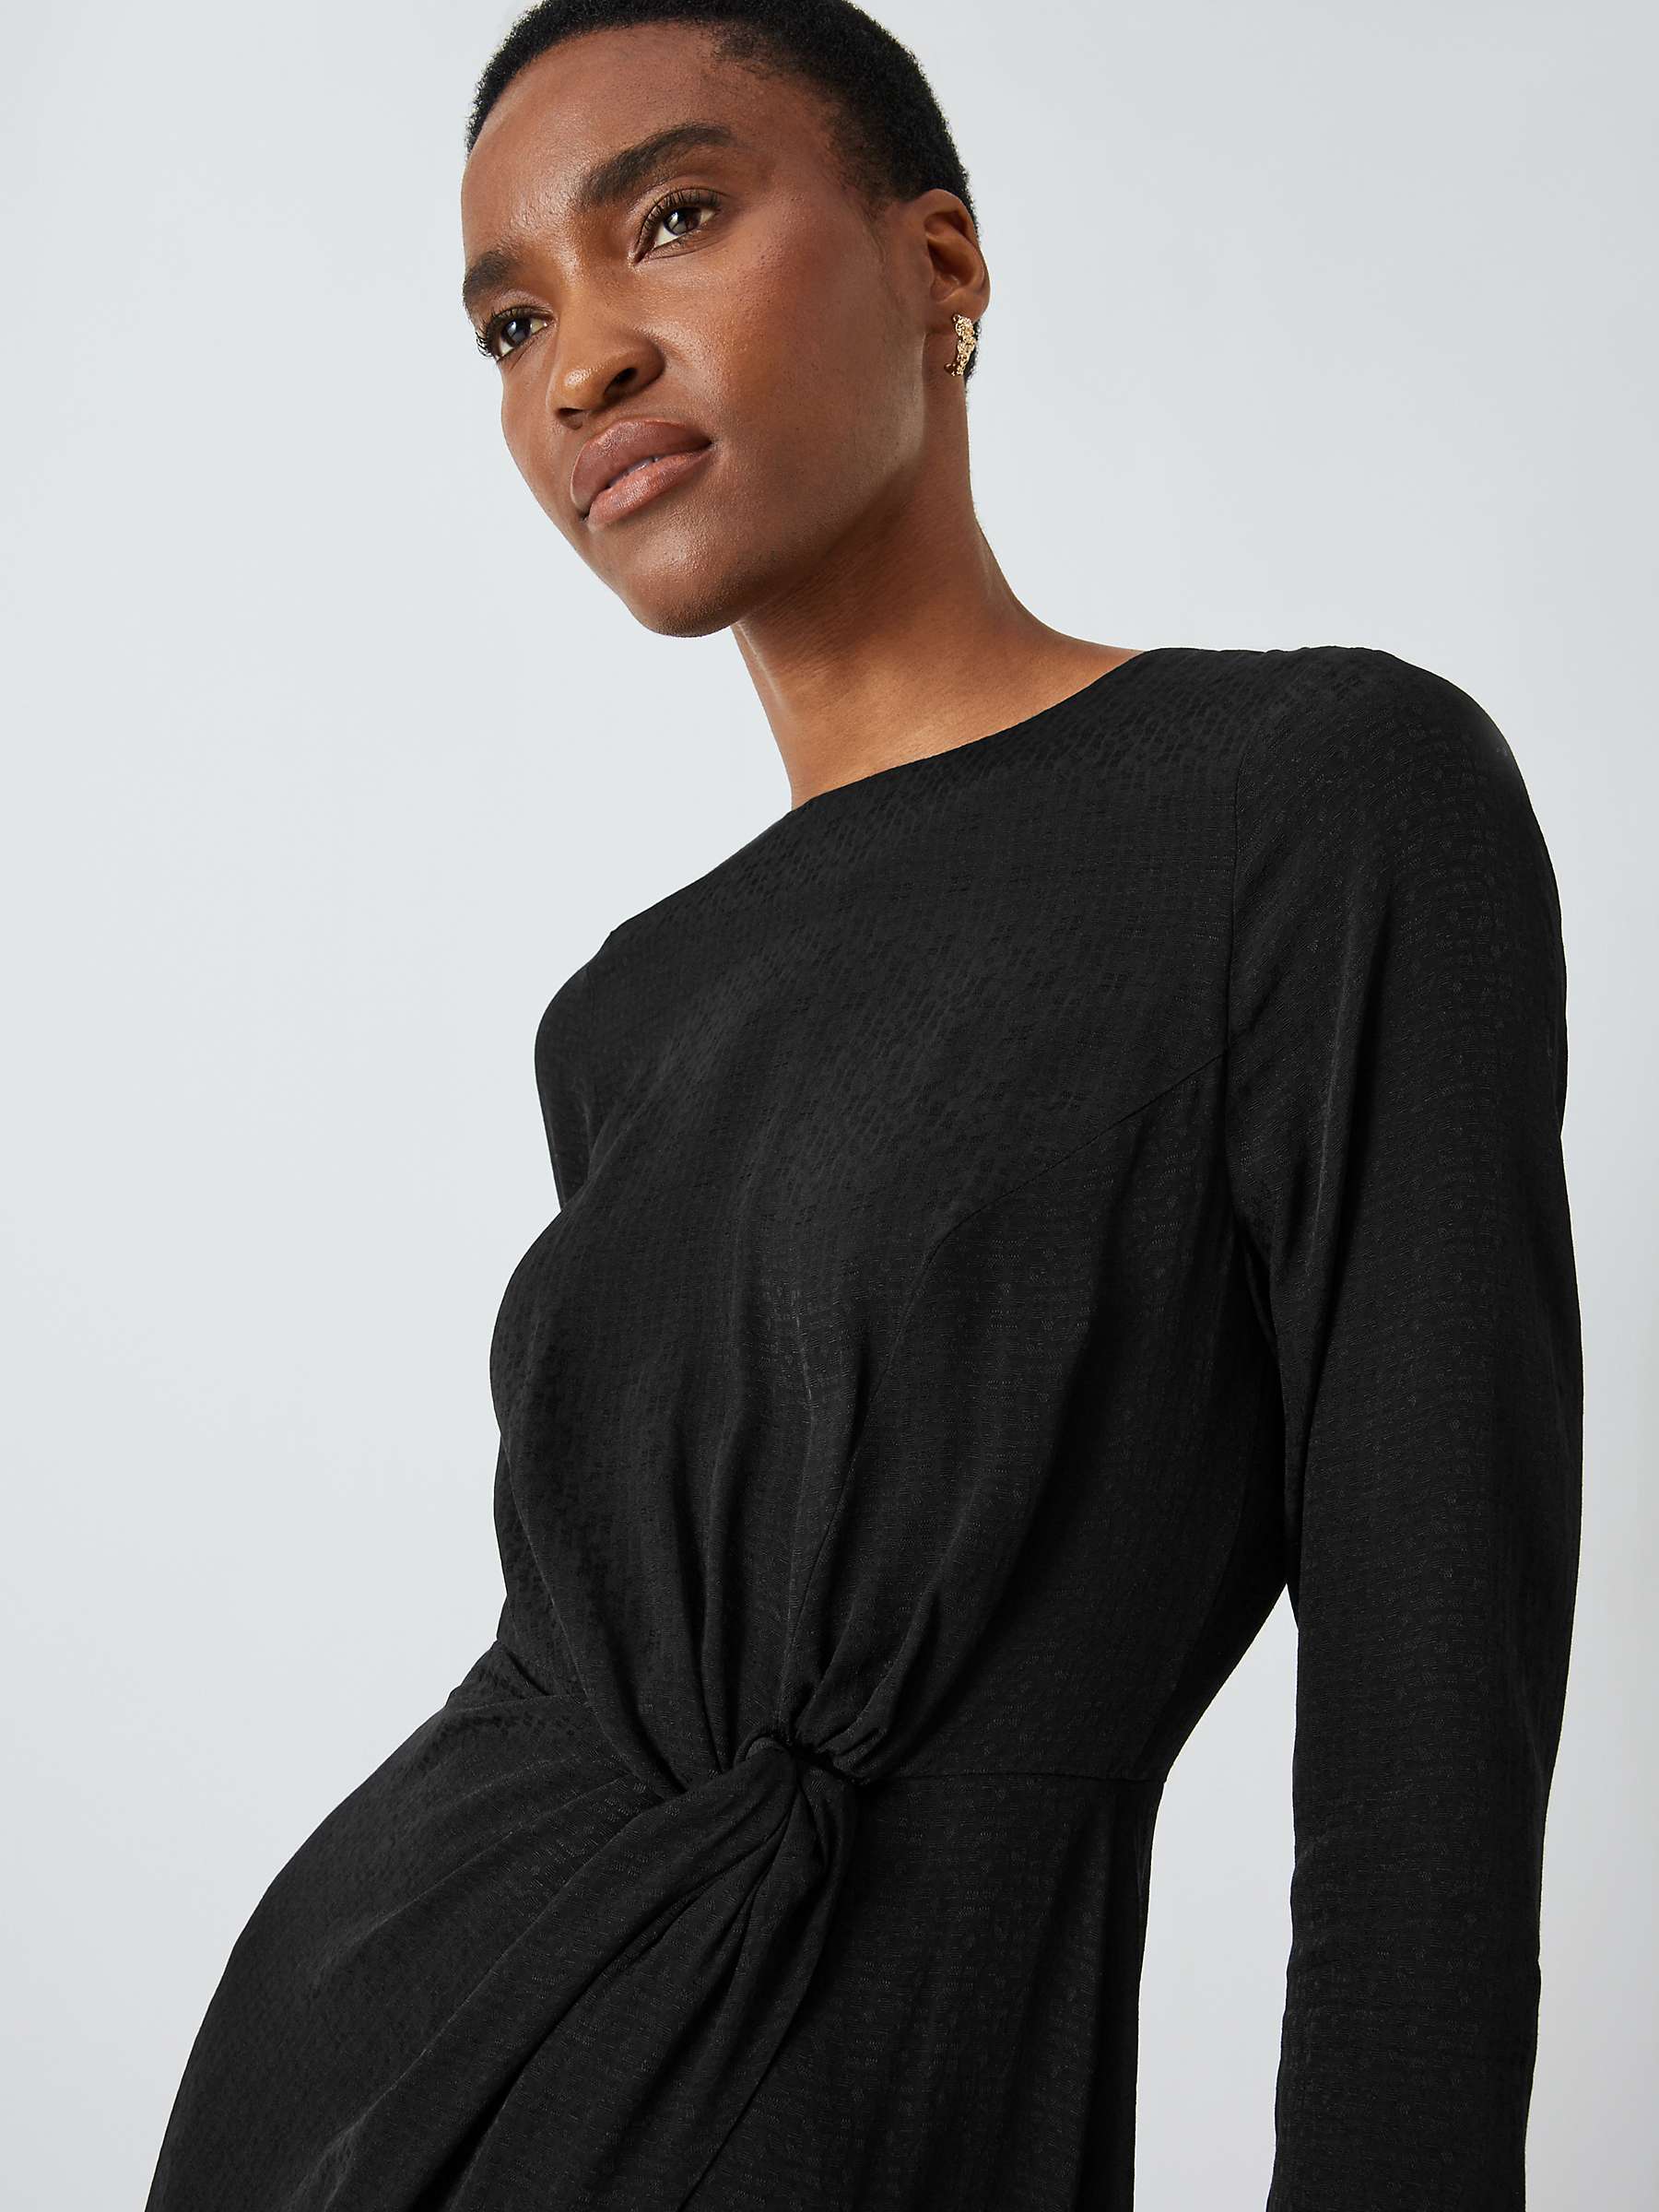 Buy John Lewis Jacquard Dress, Black Online at johnlewis.com